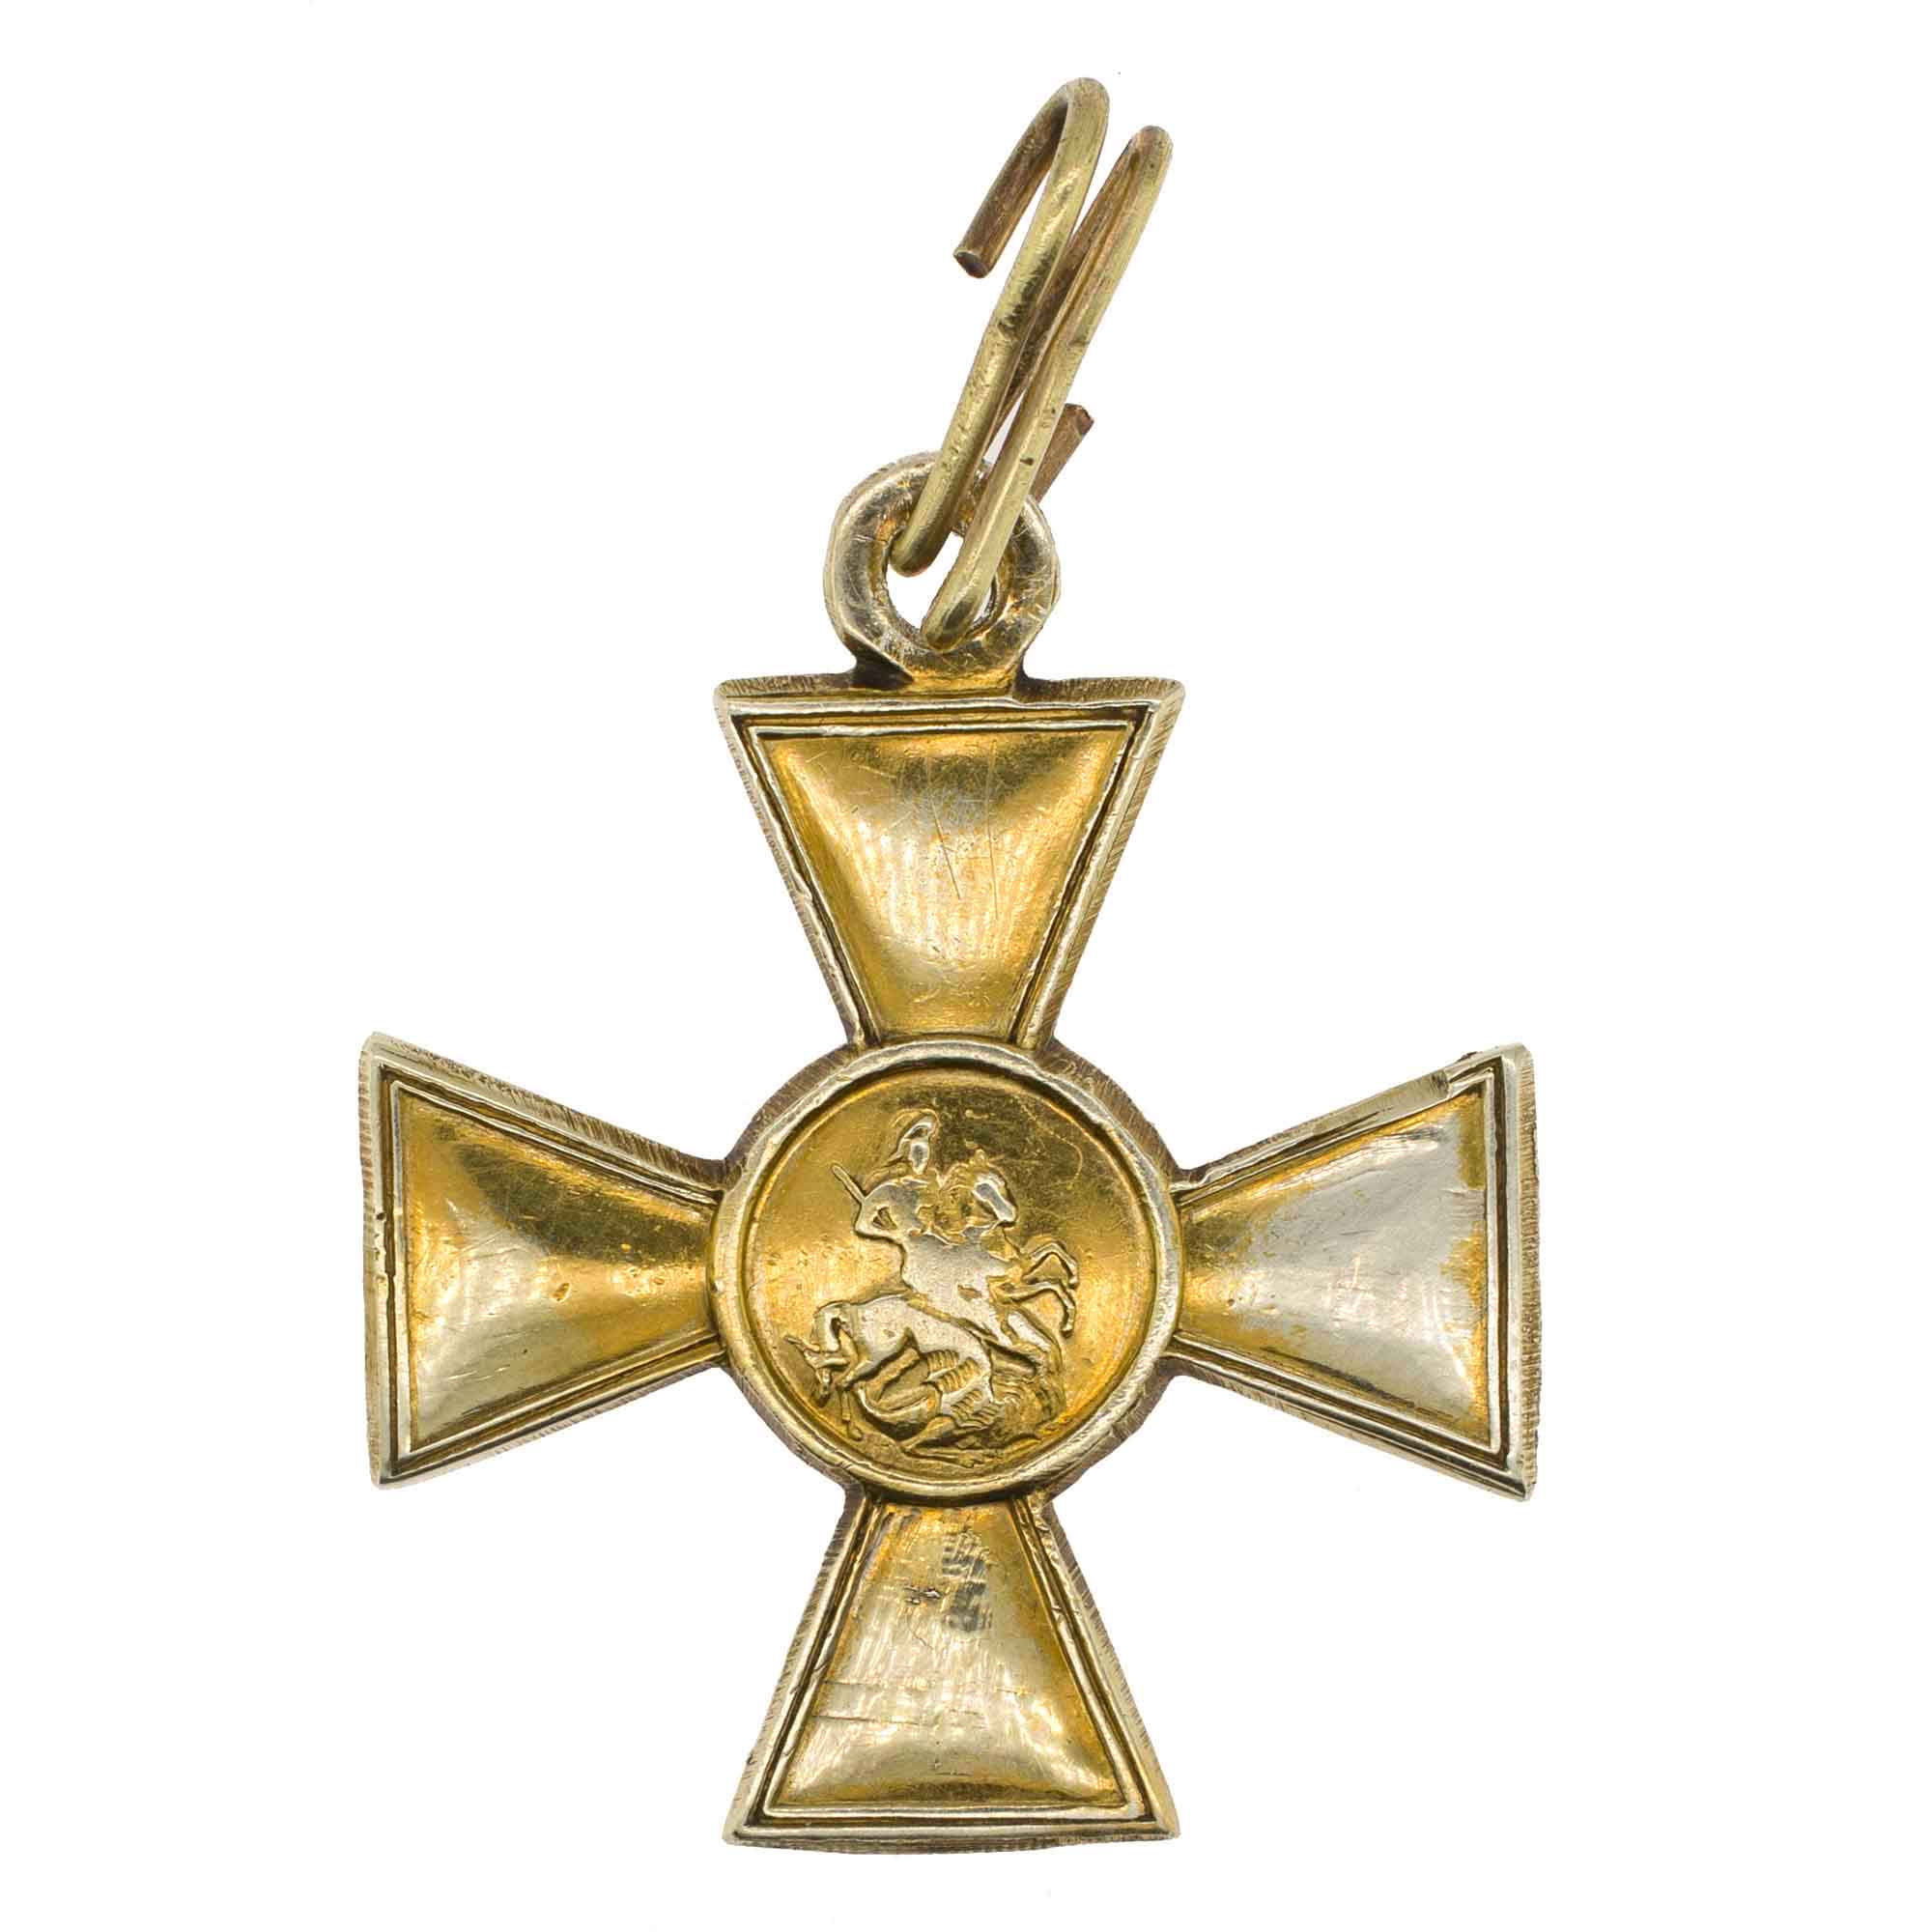 Георгиевский Крест 1 ст № 23.816 Золото (Электровое). 